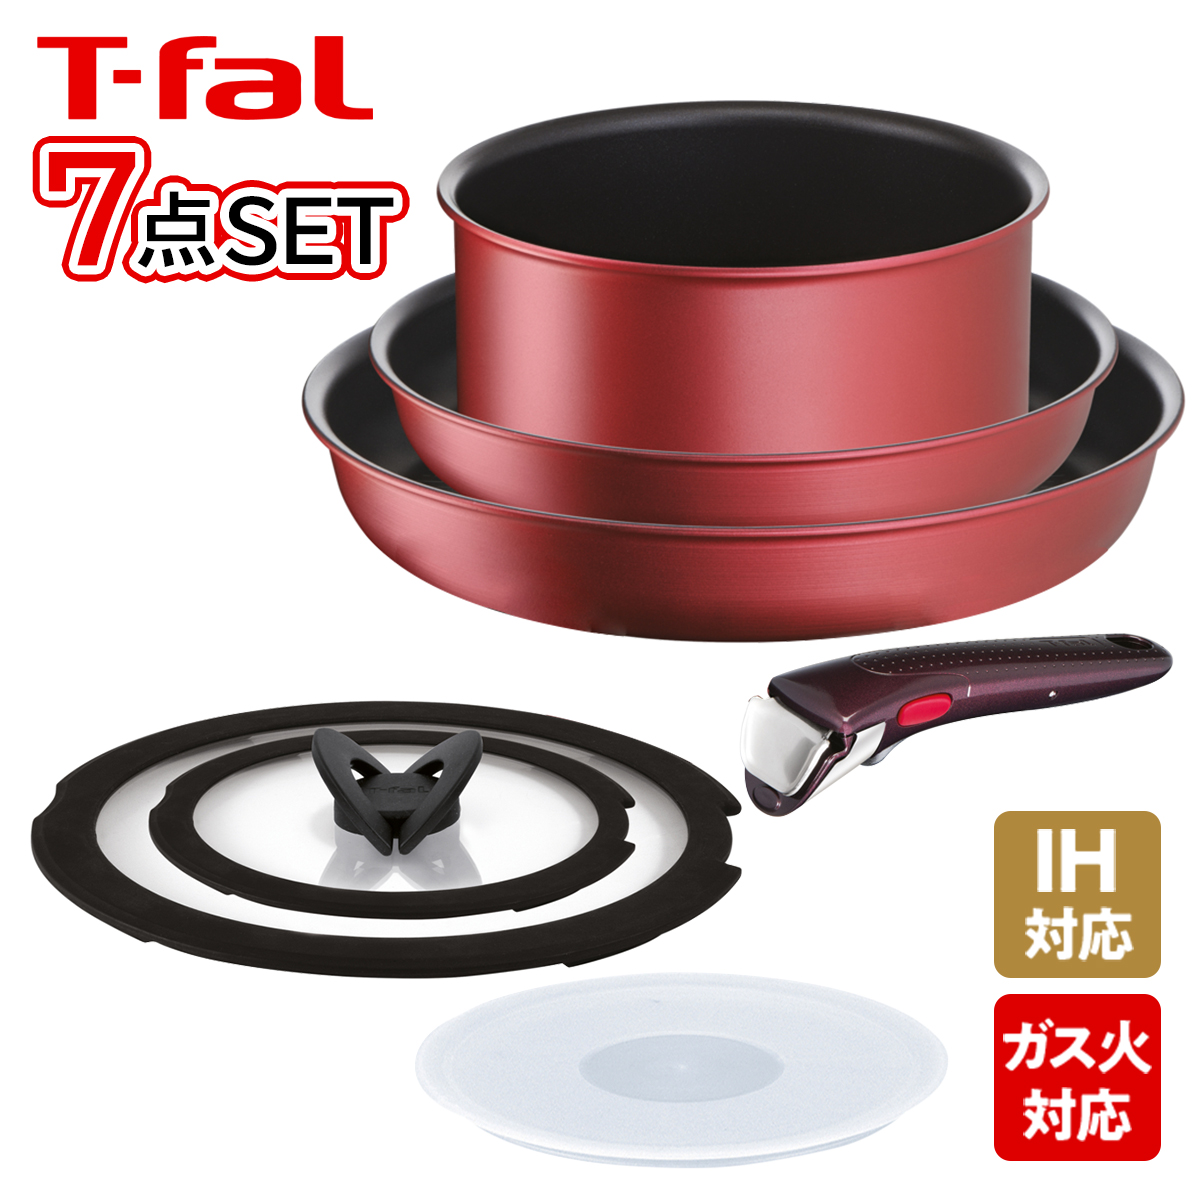 好評正規品7/4限定価格T-fal フライパンセット 調理器具